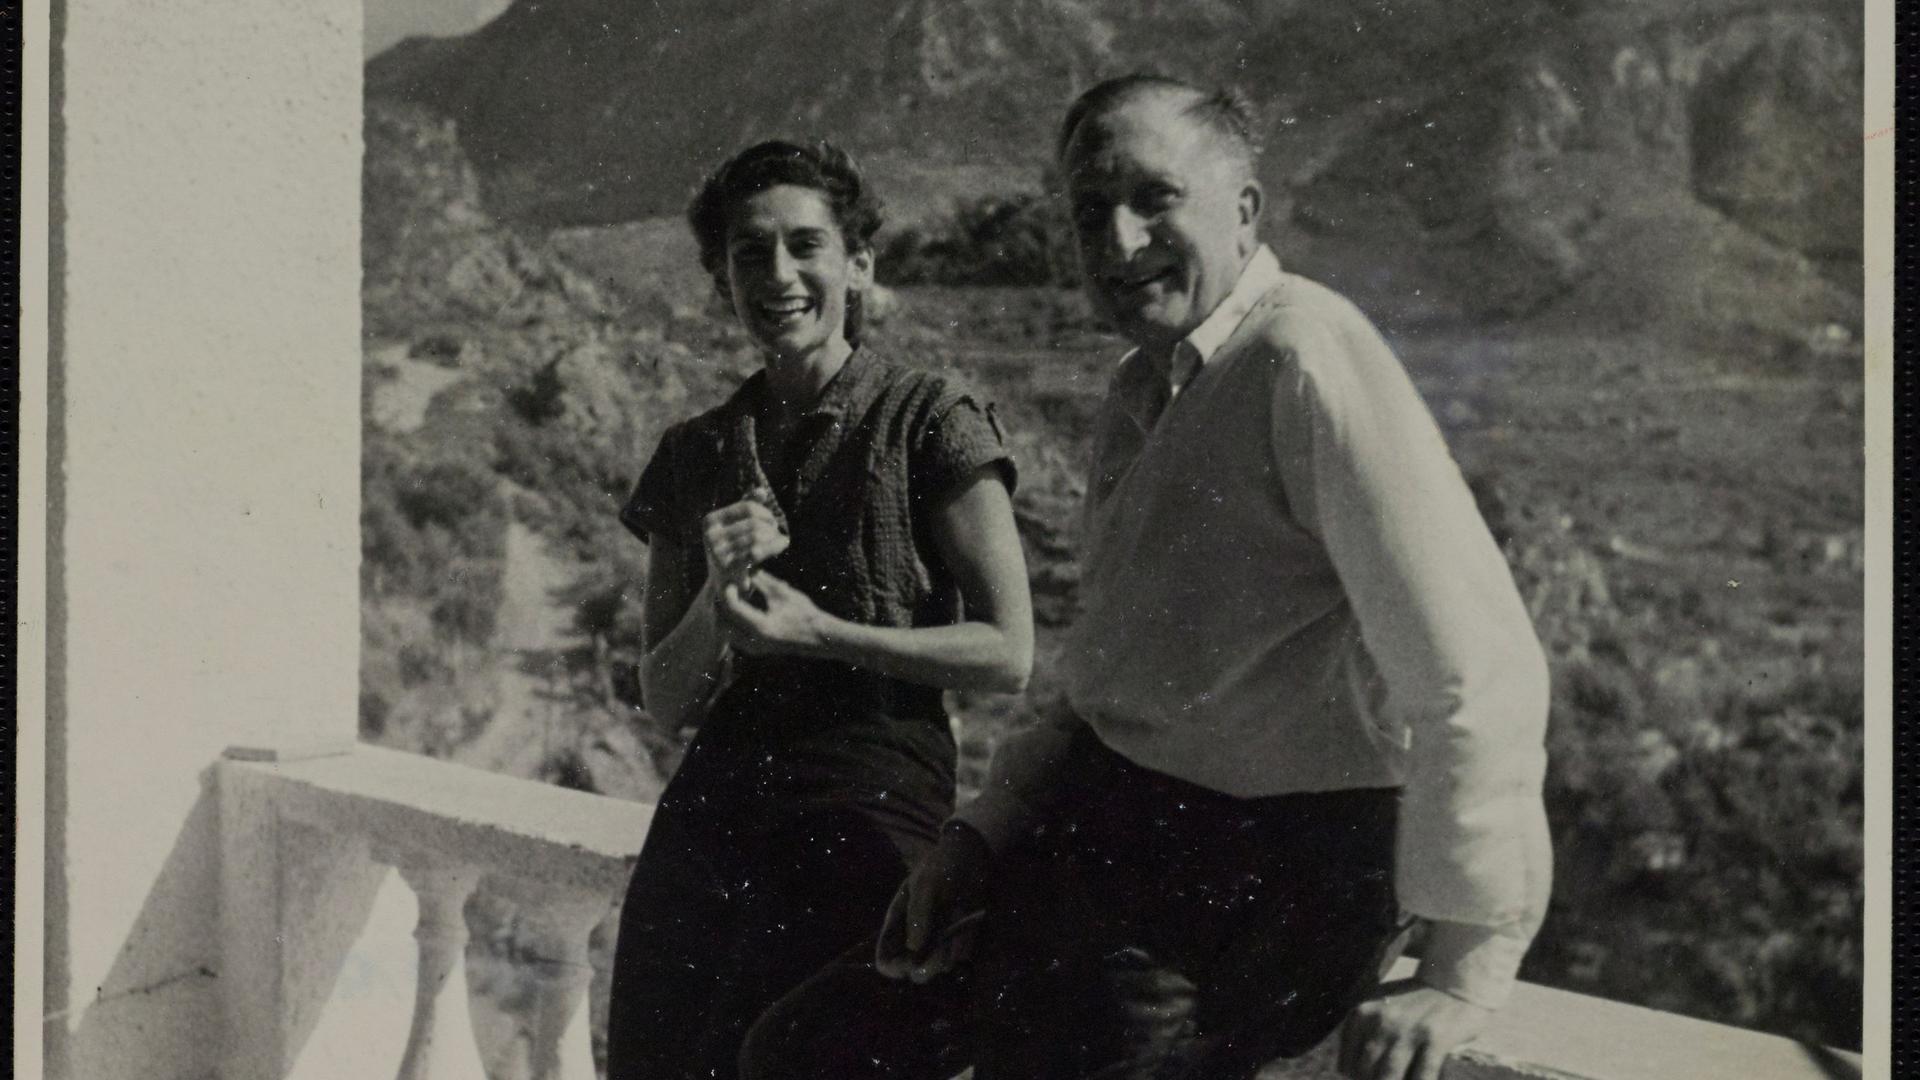 Wir sehen den Komponisten William Walton zusammen mit seiner Frau in die Kamera lächeln. Sie stehen auf einem Balkon. Hinter ihnen sieht man eine Berglandschaft. 